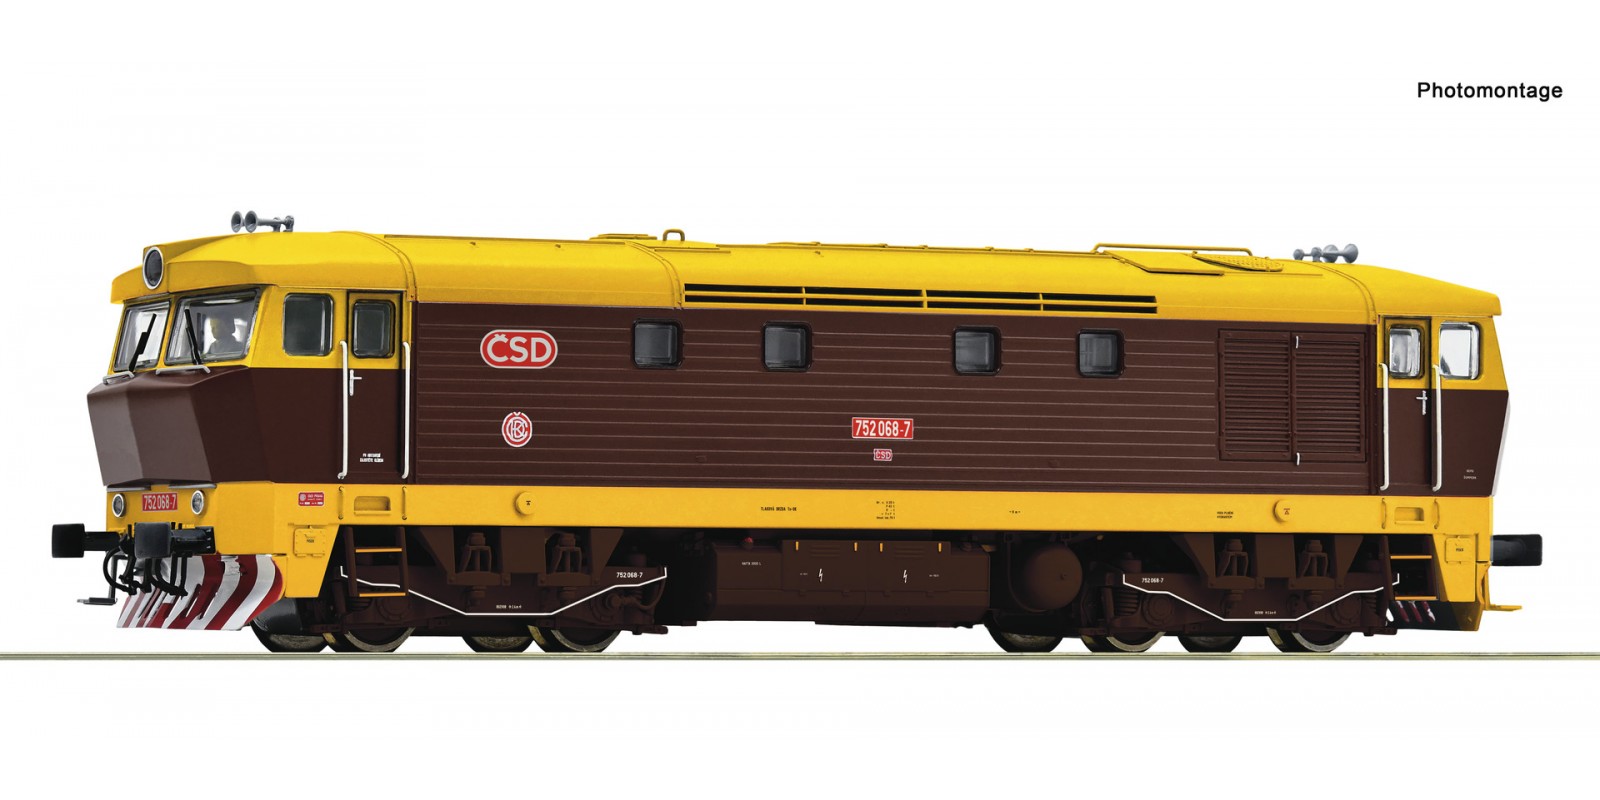 RO7300026 Diesel locomotive 752 068 -7, ?SD/CD               